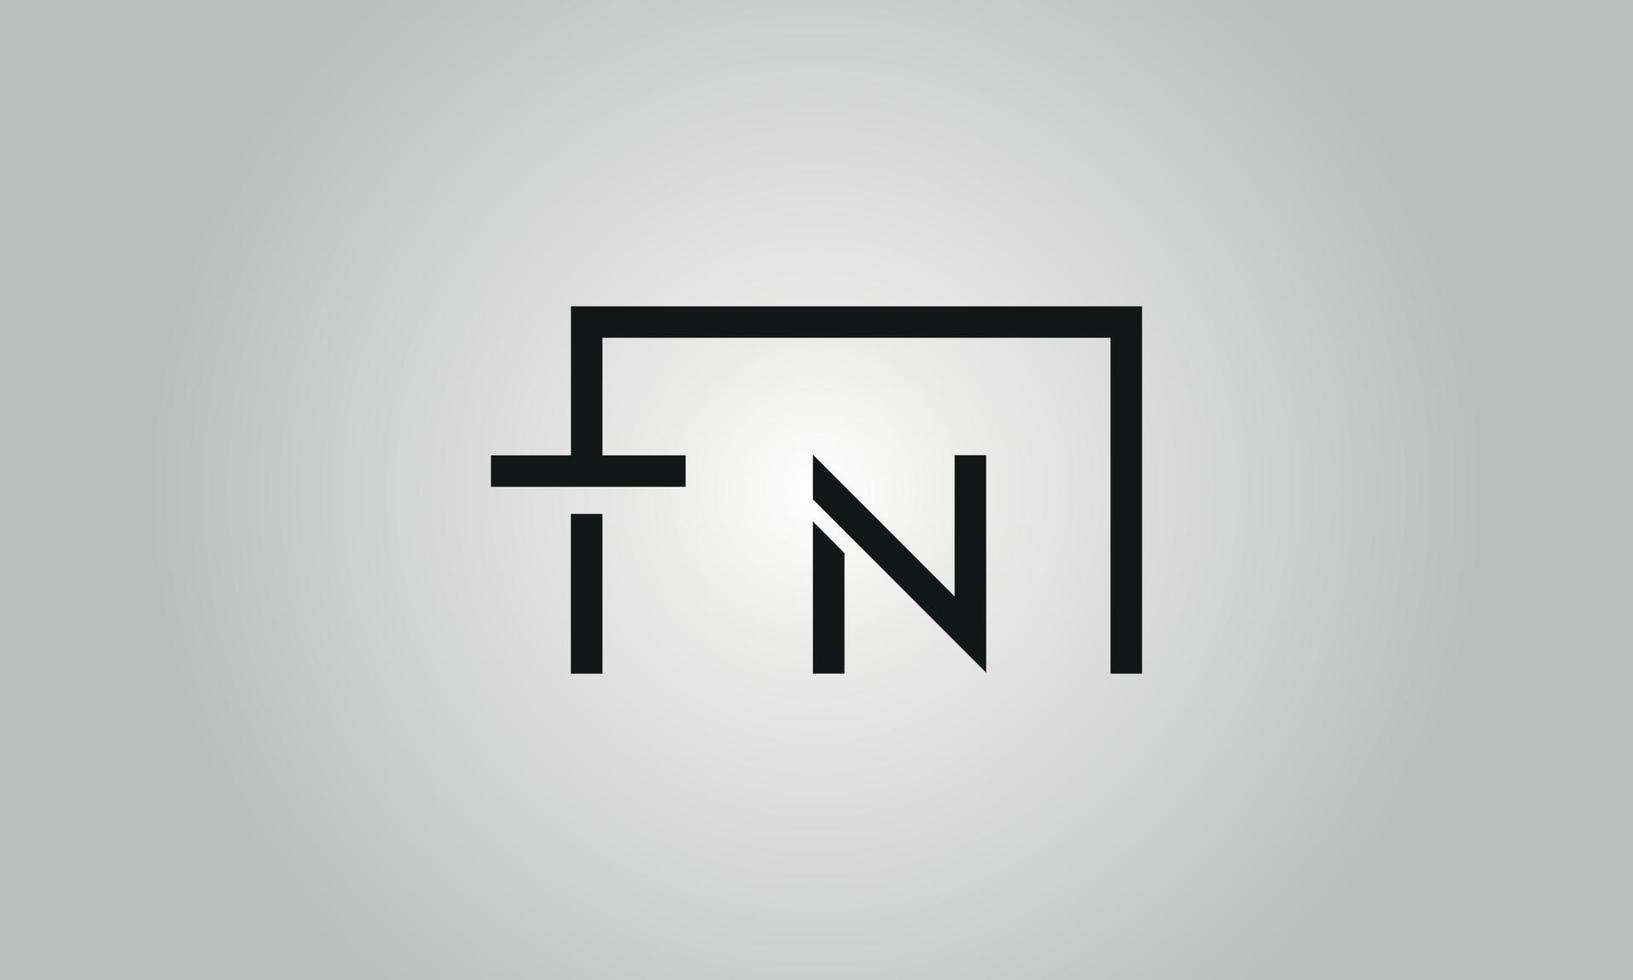 création de logo lettre tn. logo tn avec forme carrée dans le modèle de vecteur gratuit de vecteur de couleurs noires.